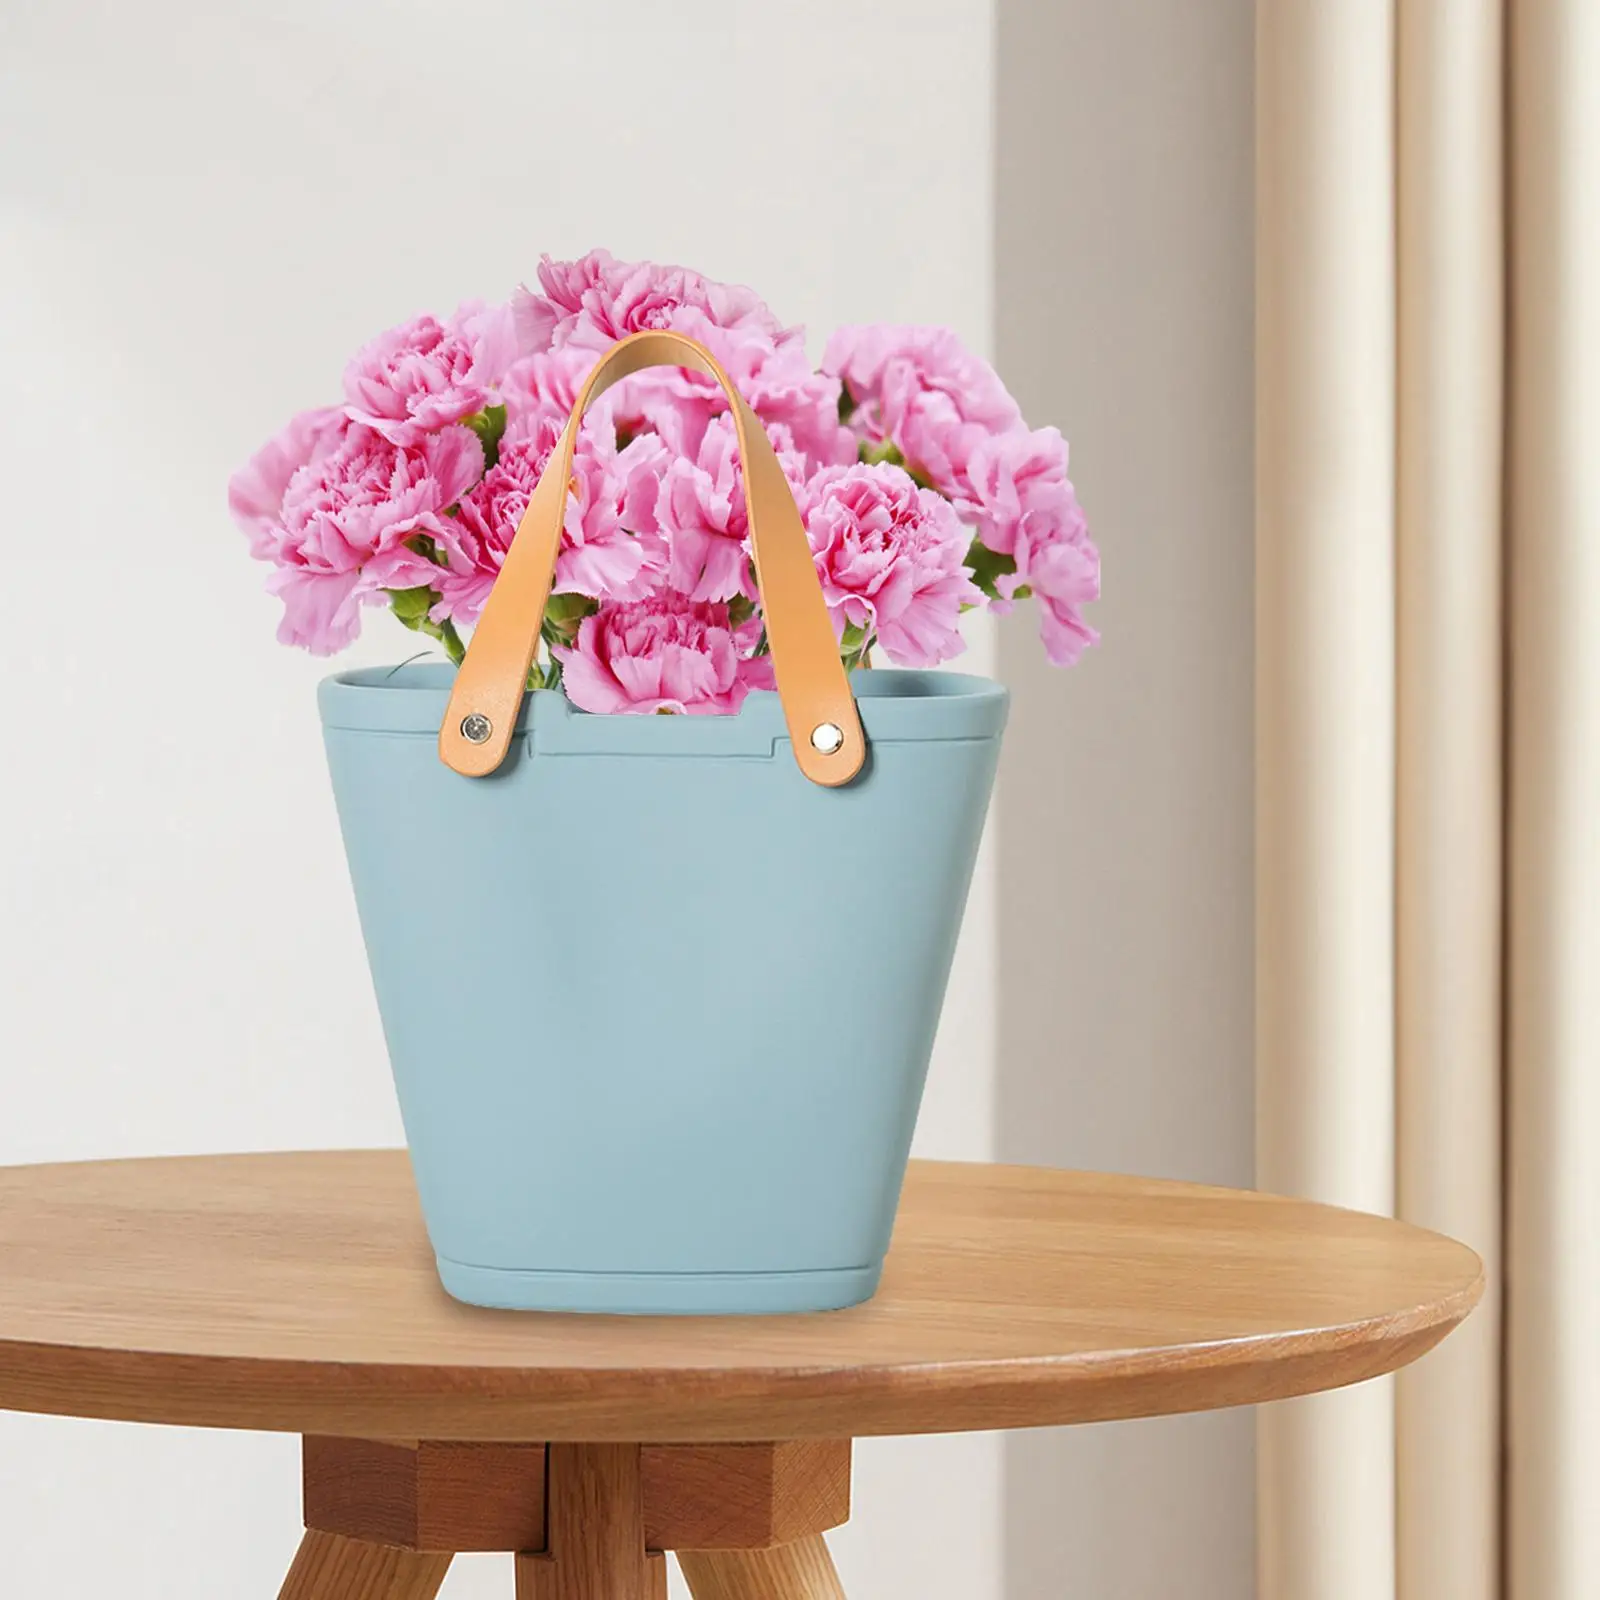 Ceramic Vase Decorative Wide Mouth Flower Vase for Shelf Wedding Bedroom